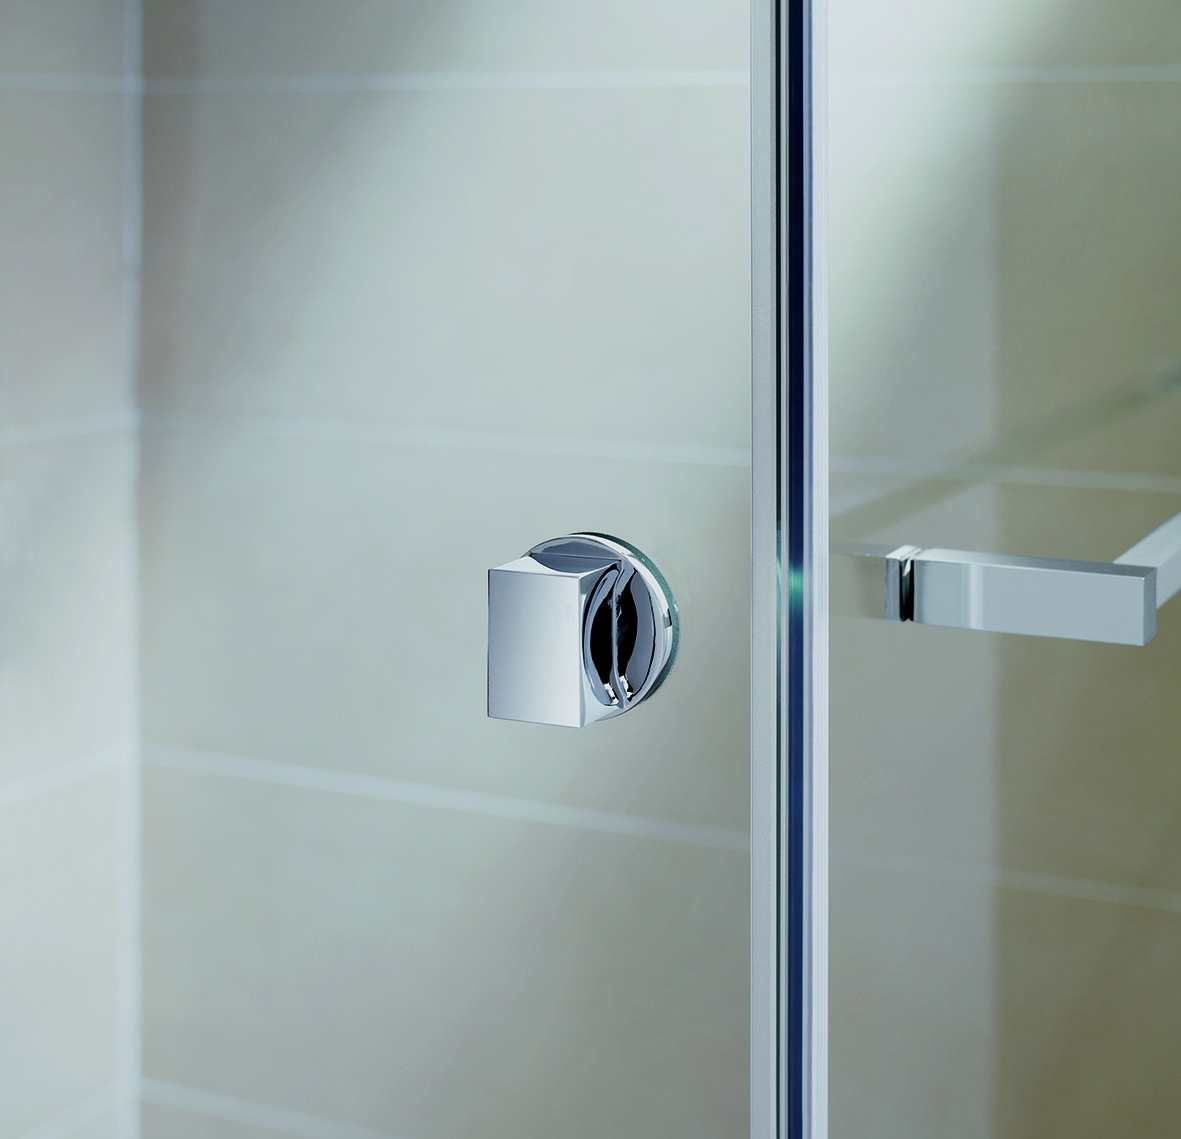 Wählen Sie hier für Ihre Duschtür einen Griff, Knopf oder Stangengriff nach Ihren Vorstellungen